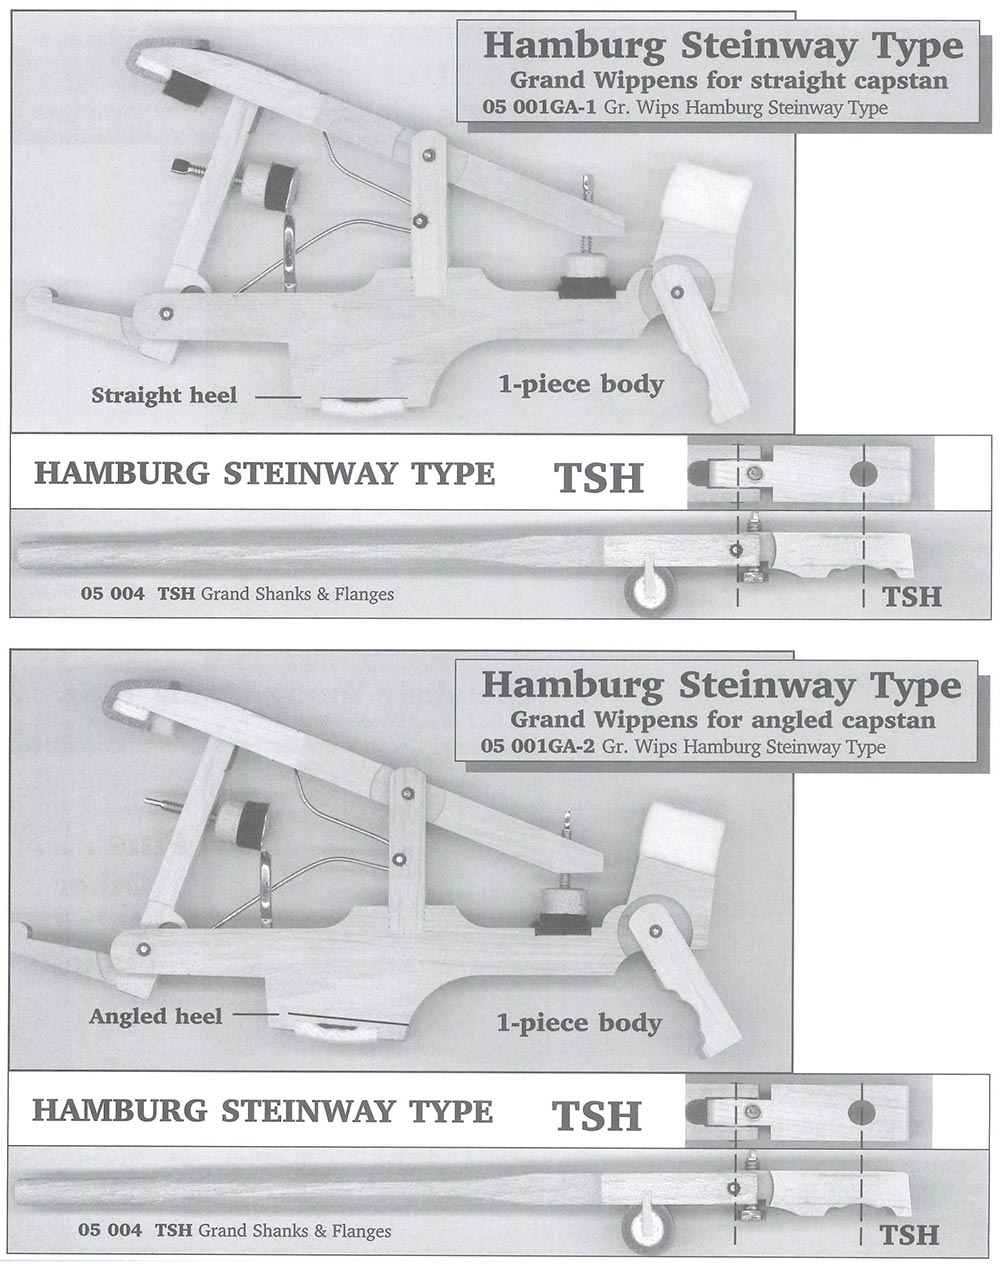 Grand Piano Wippens - Hamburg Steinway Types